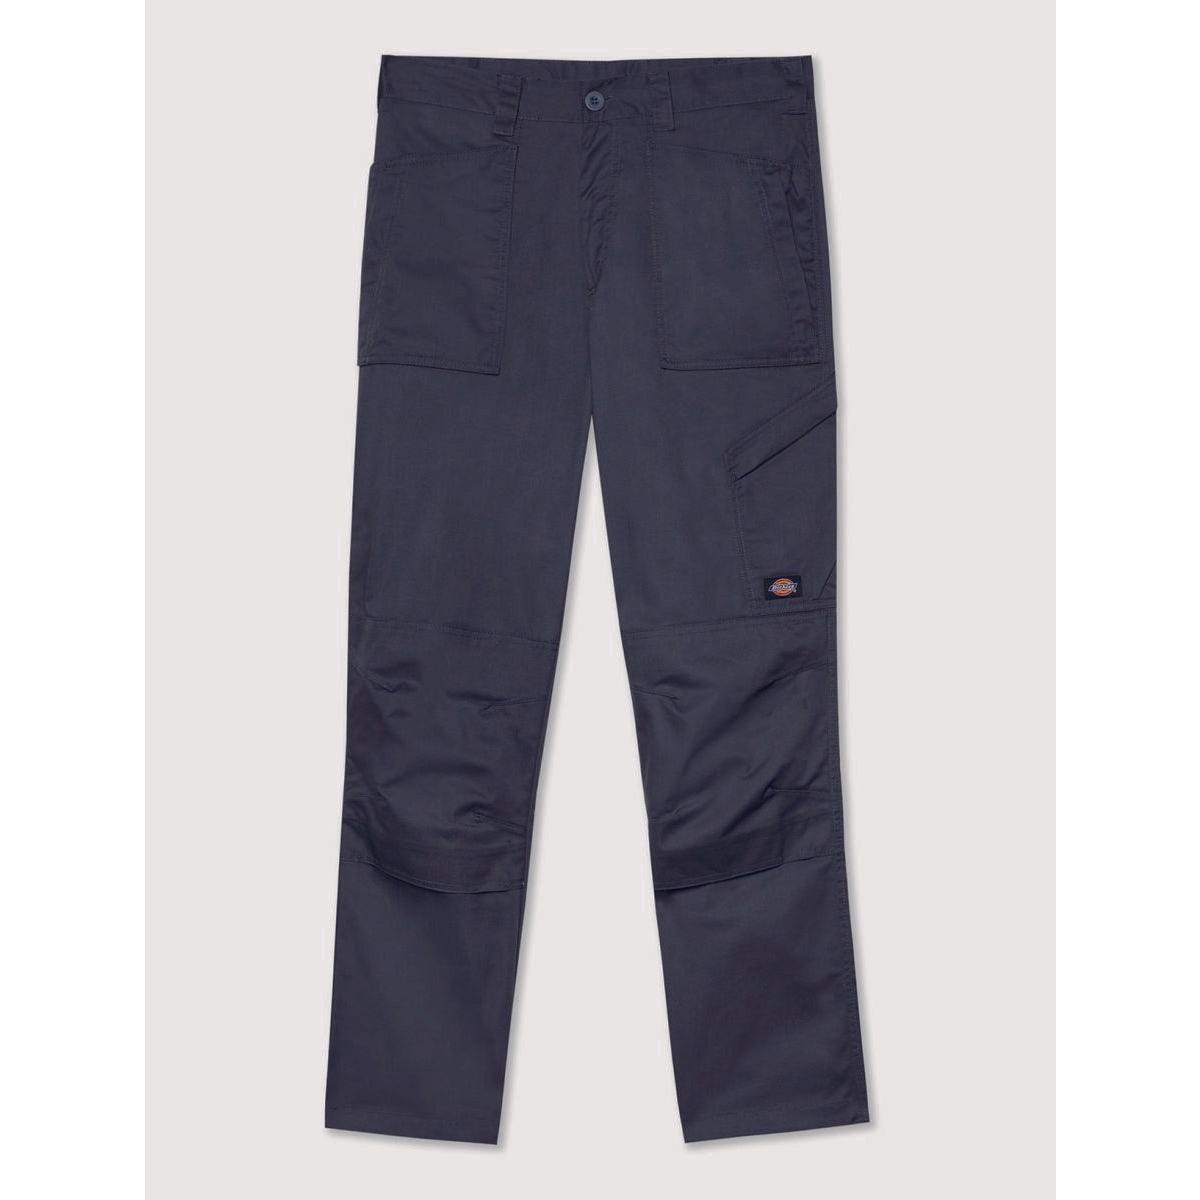 Pantalon de travail Action Flex gris - Dickies - Taille 42 5